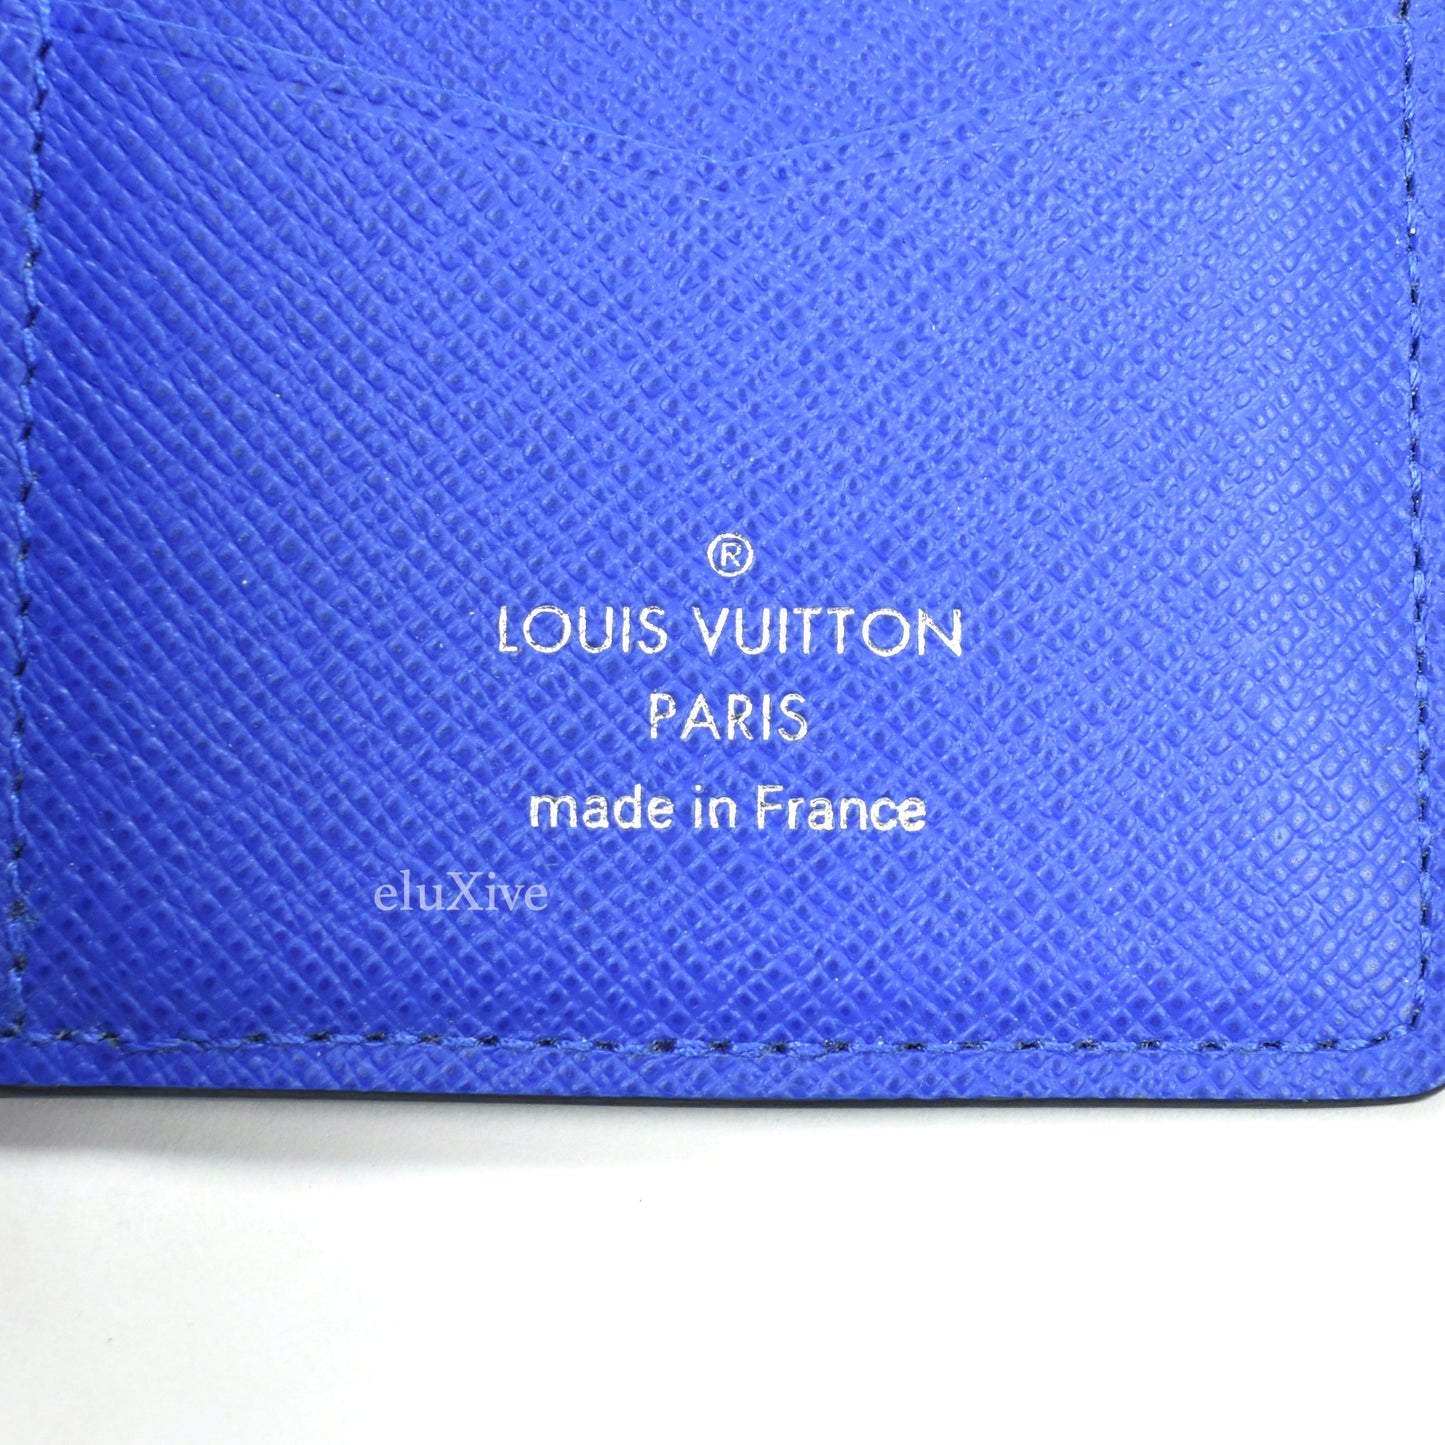 Men's pocket organizer : r/Louisvuitton